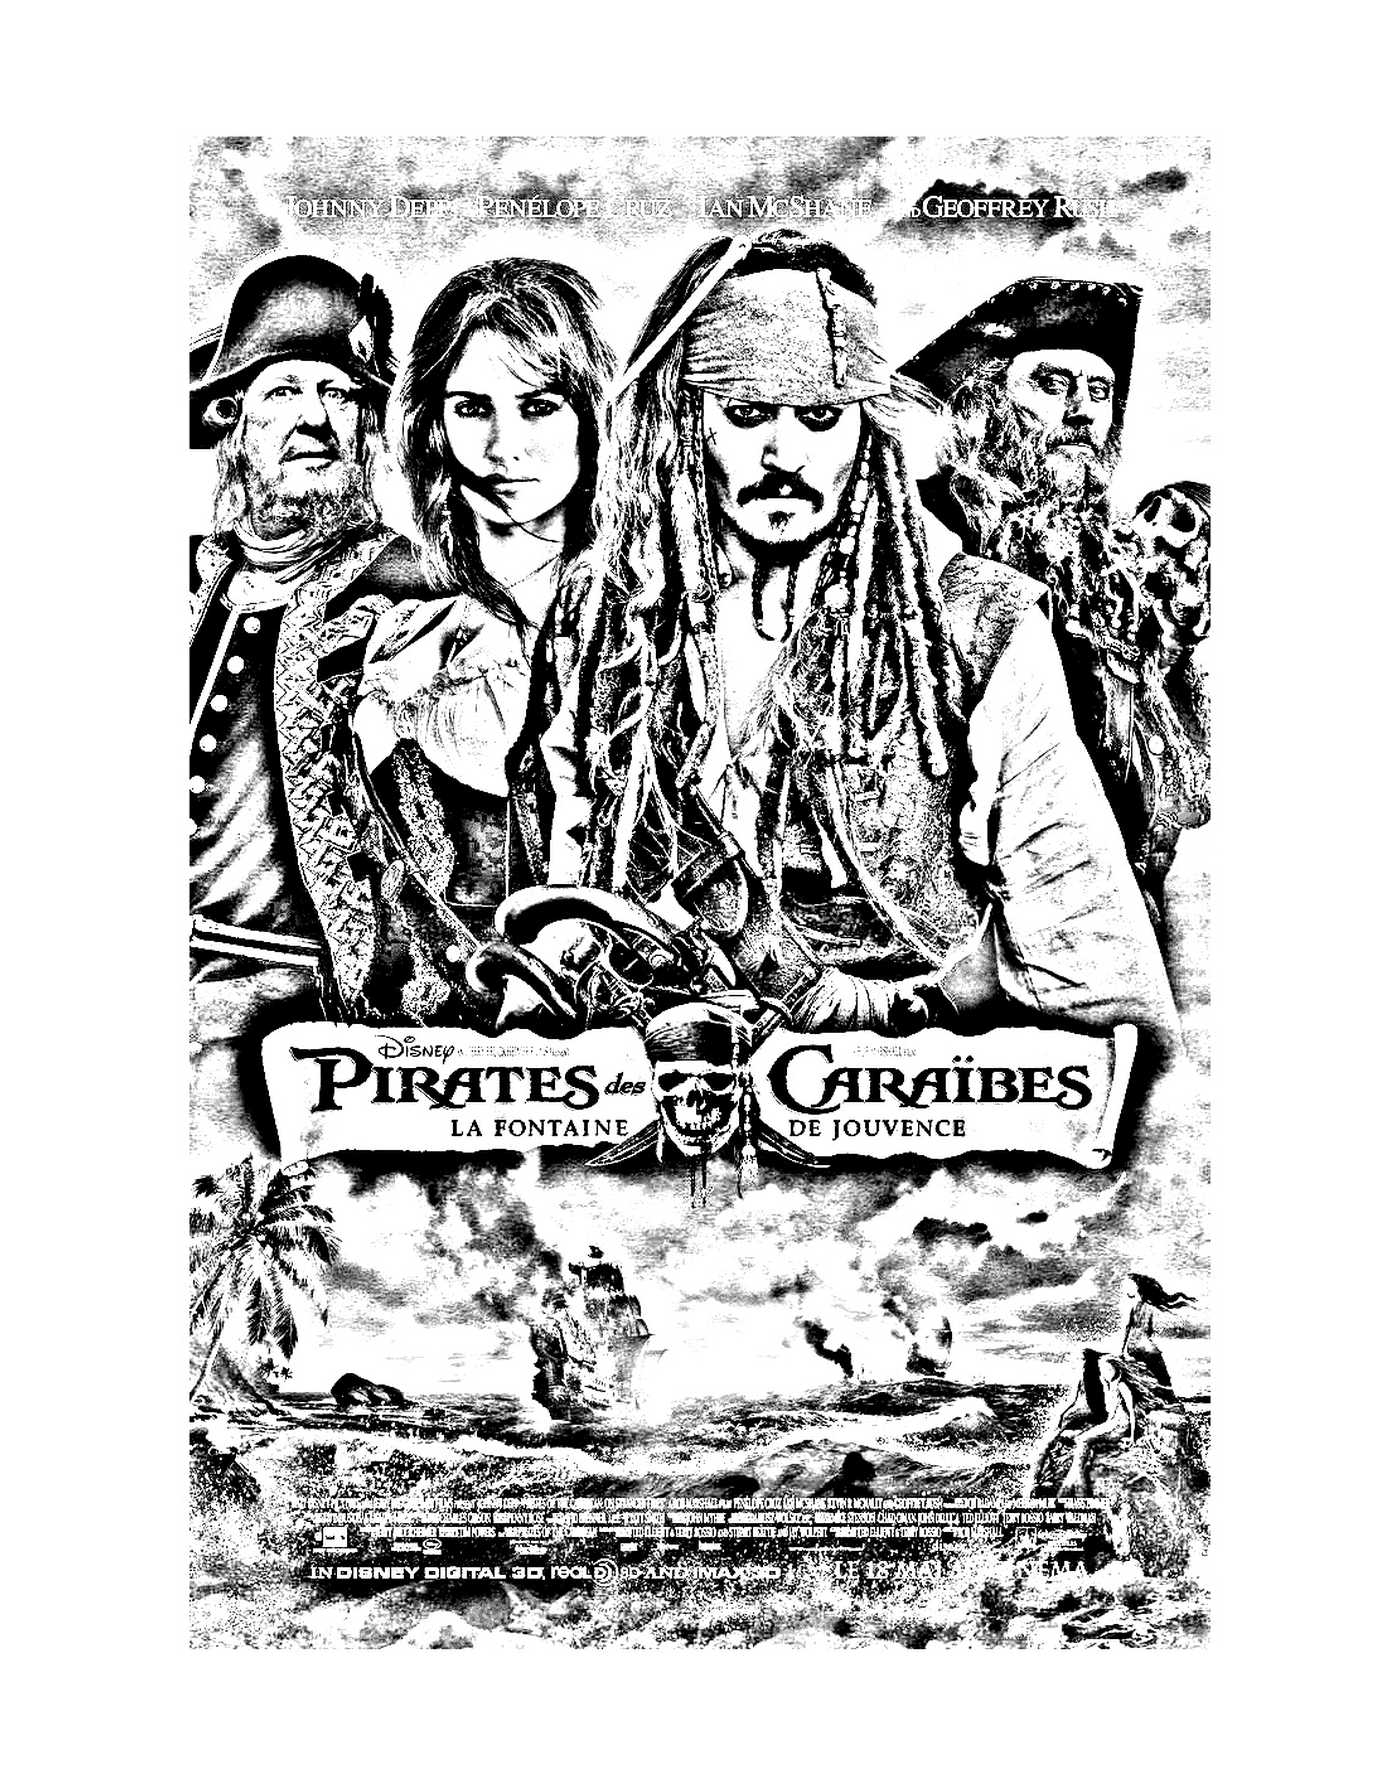  Piratas de cine del Caribe 4 